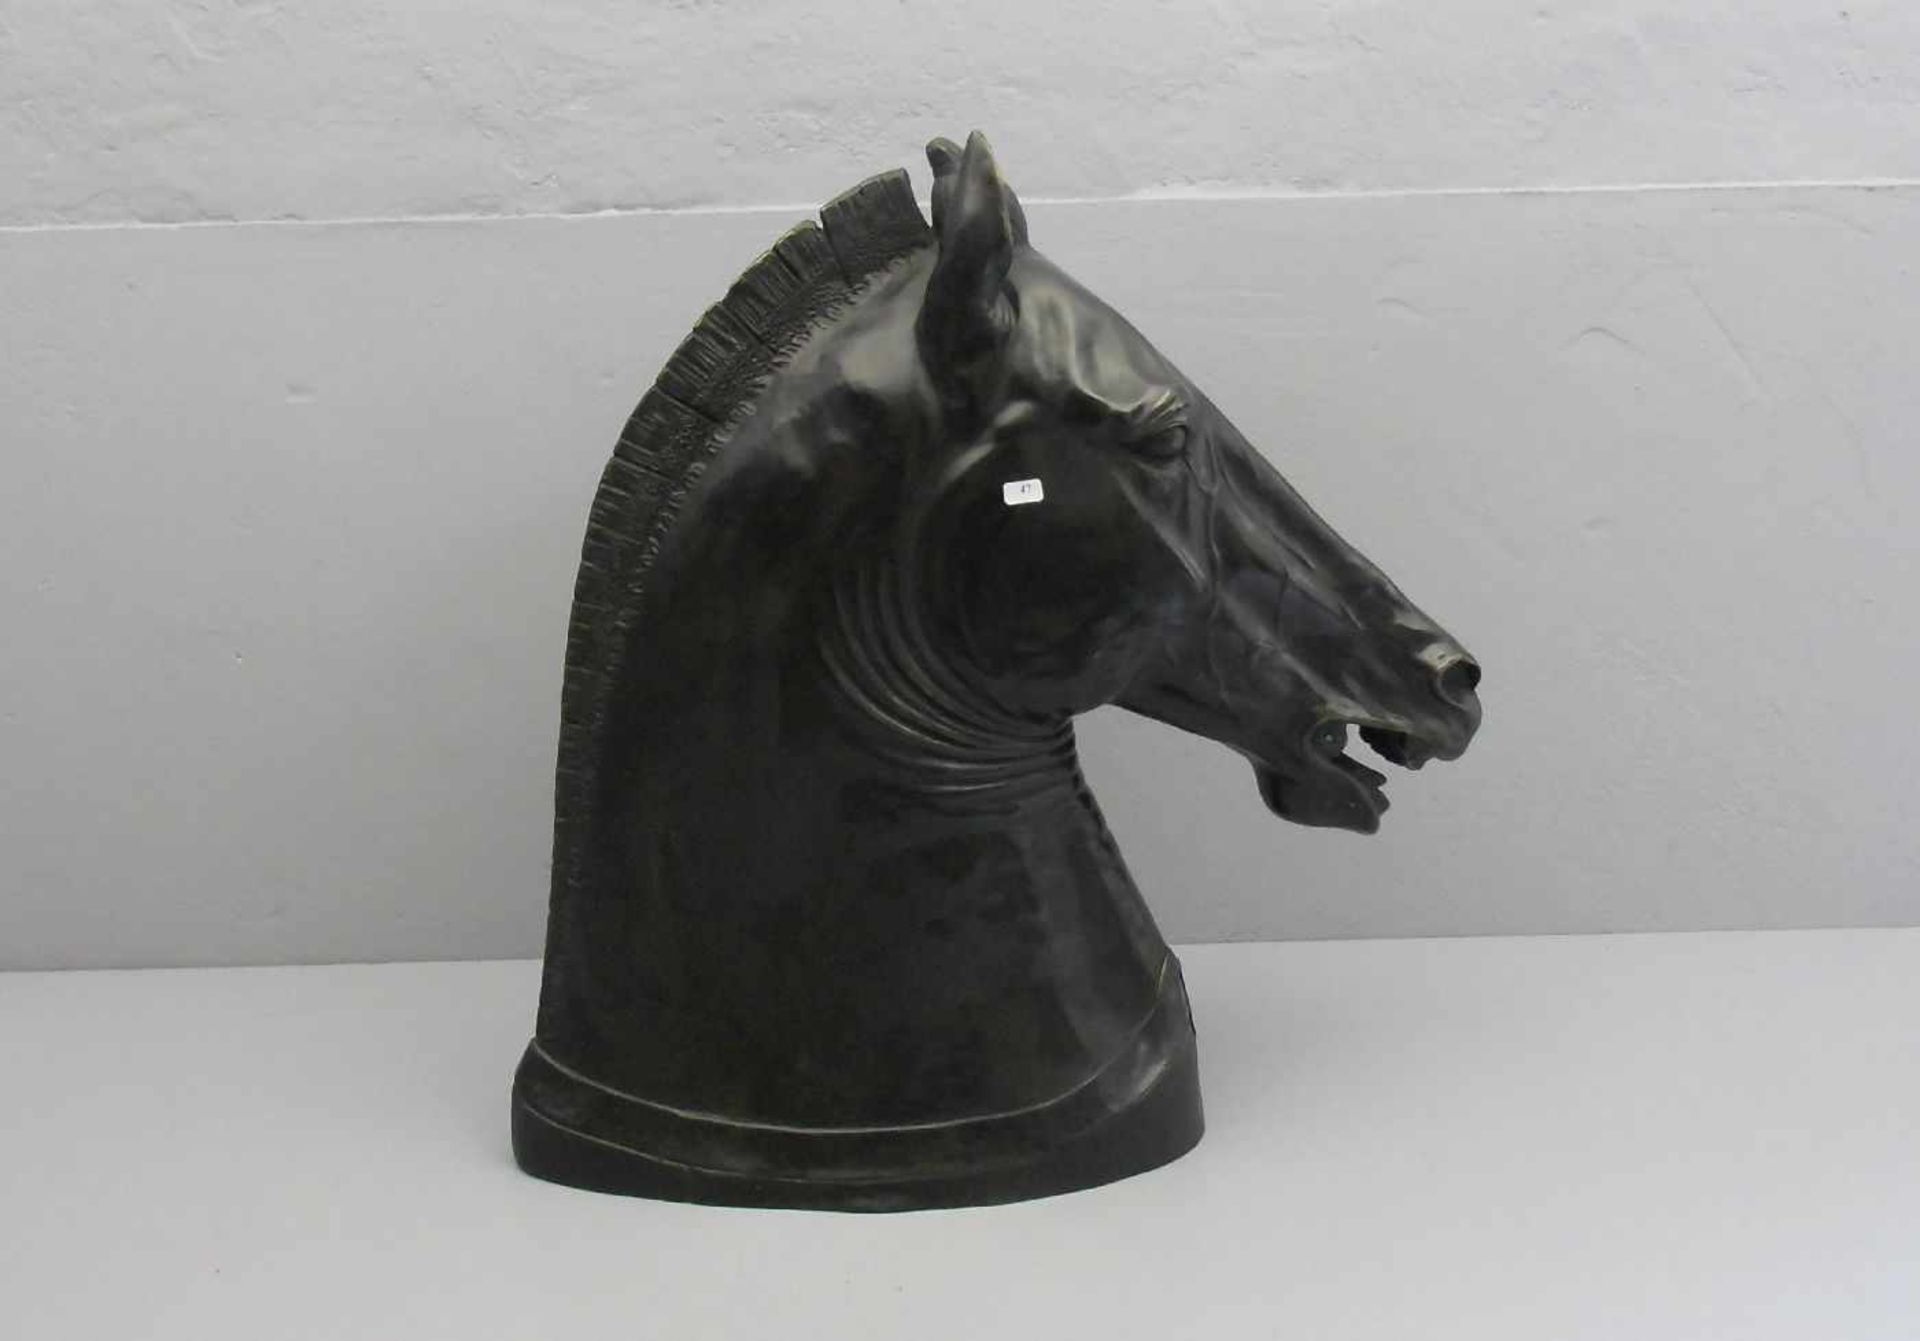 ANONYMUS (20. Jh.), Skulptur / sculpture: "Pferdekopf", Bronze, dunkelbraun patiniert und